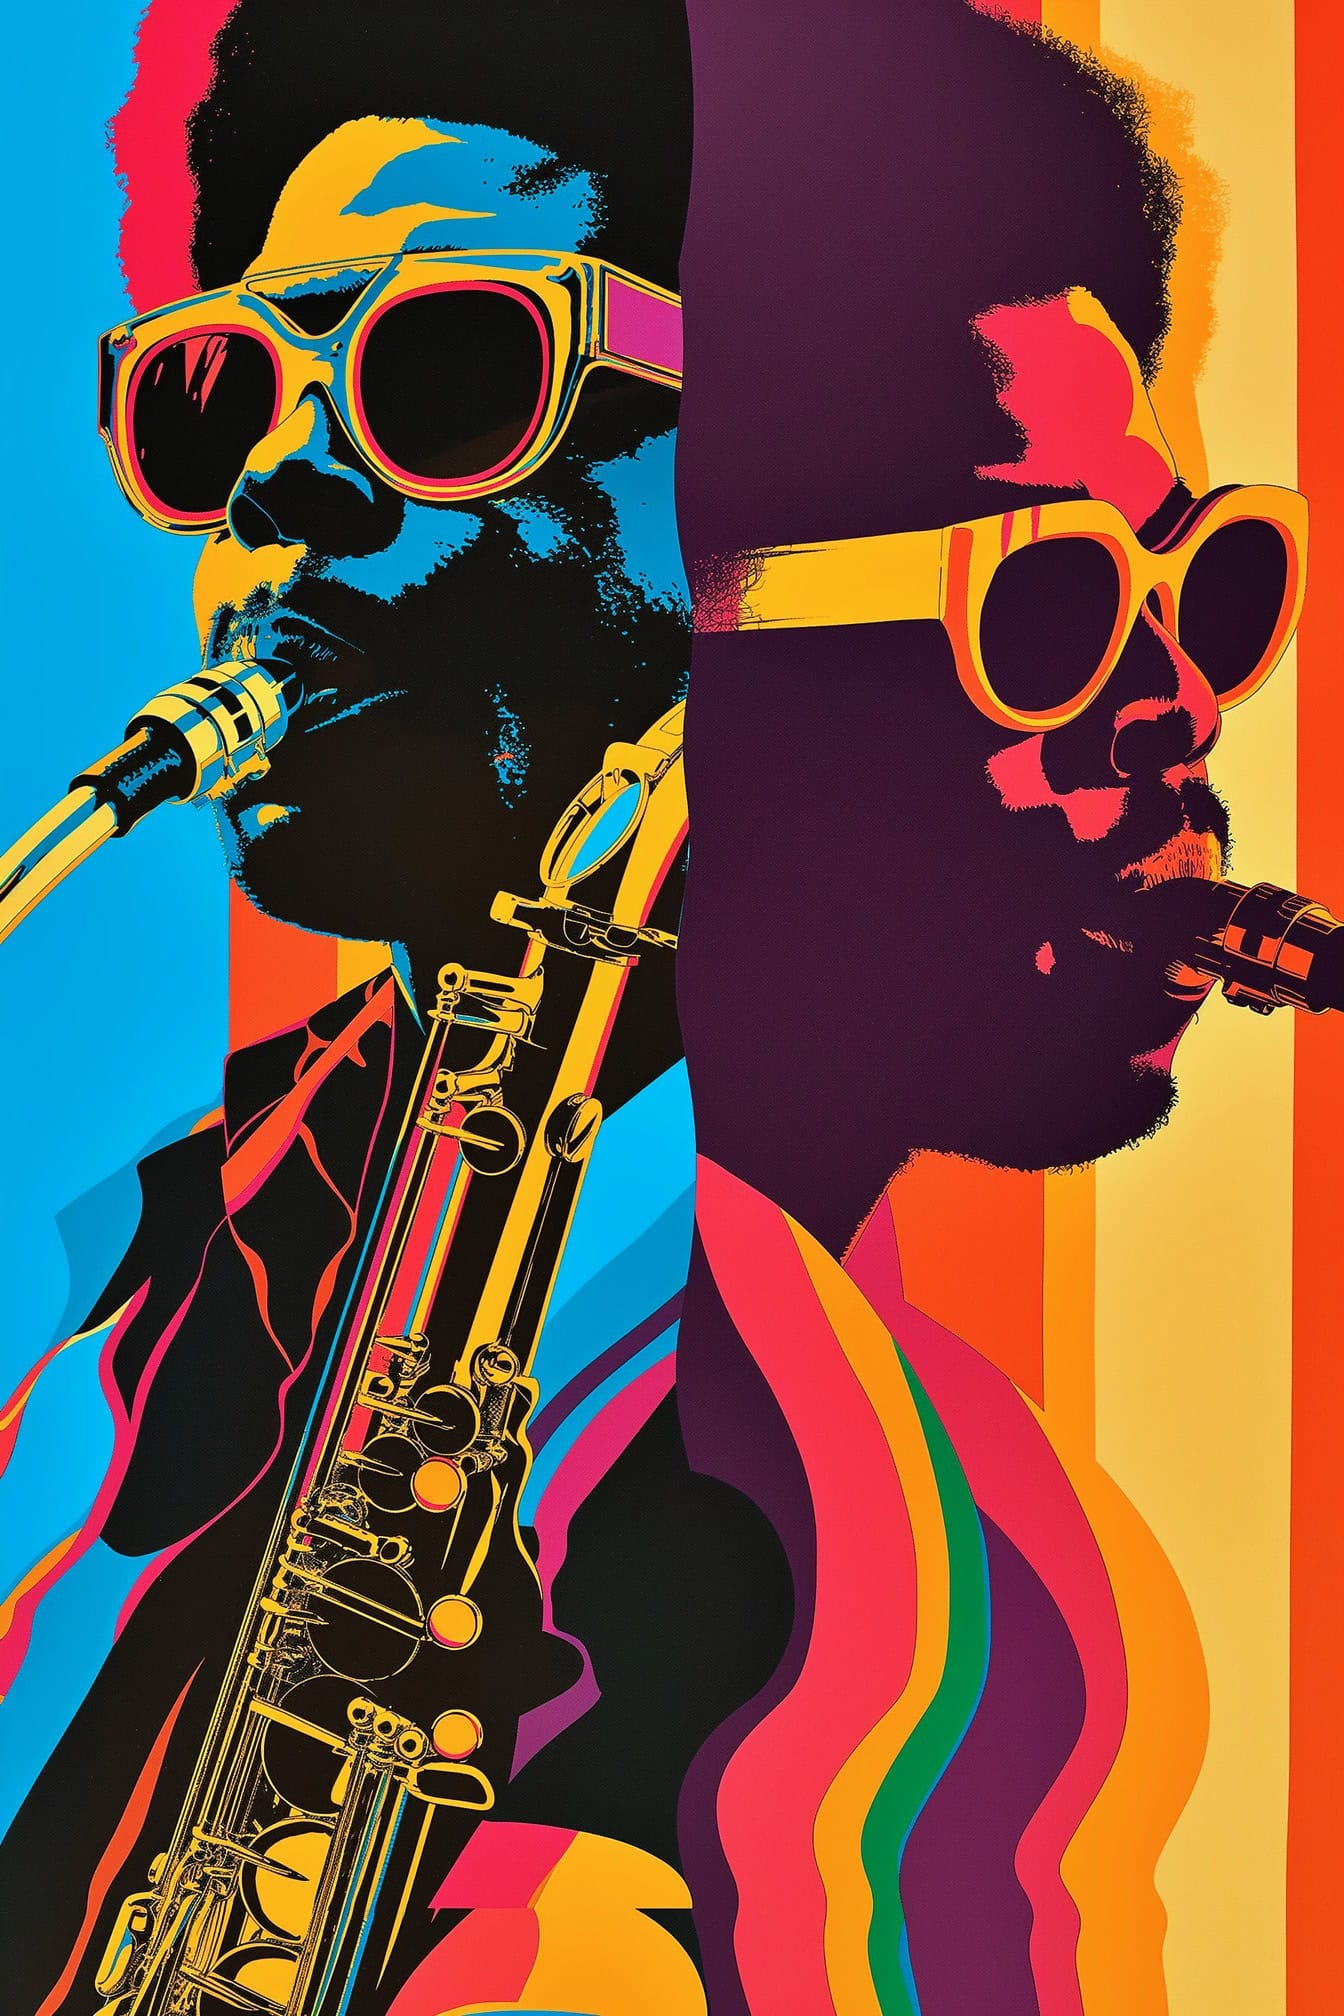 Plakat som feirer afroamerikansk musikkultur med to jazzmusikere med solbriller og saksofon